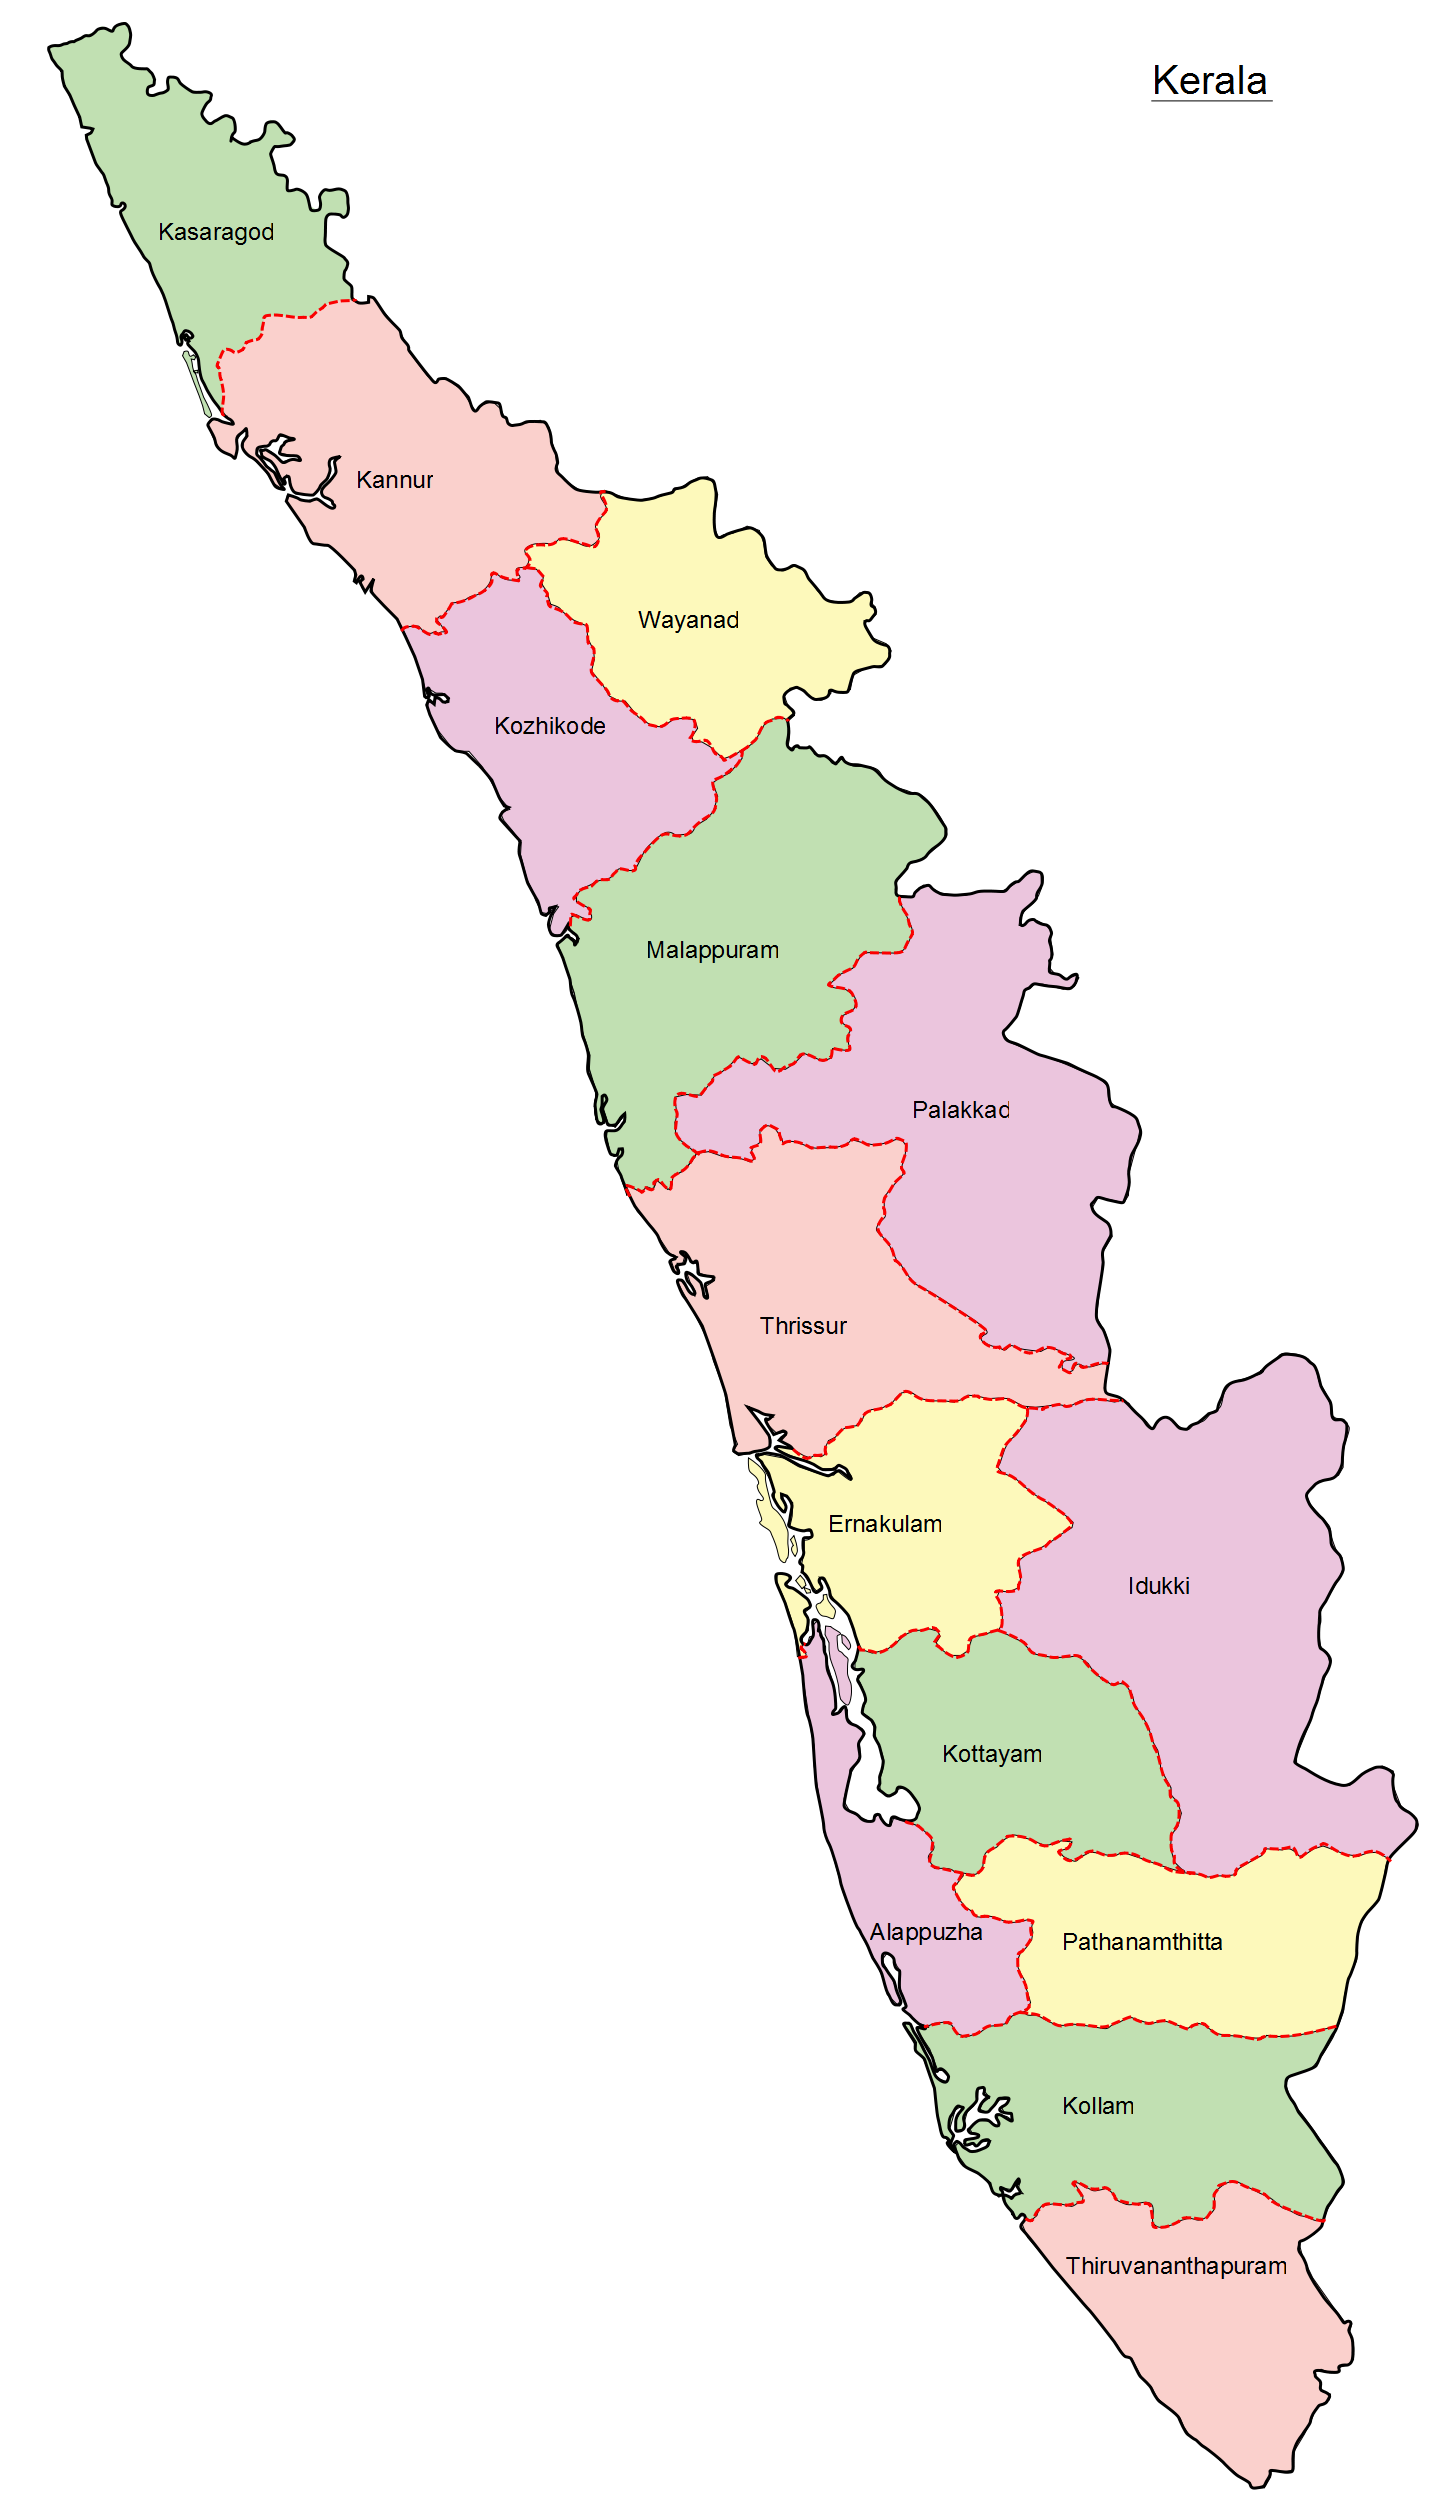 Old map of kerala (1957) : r/Kerala